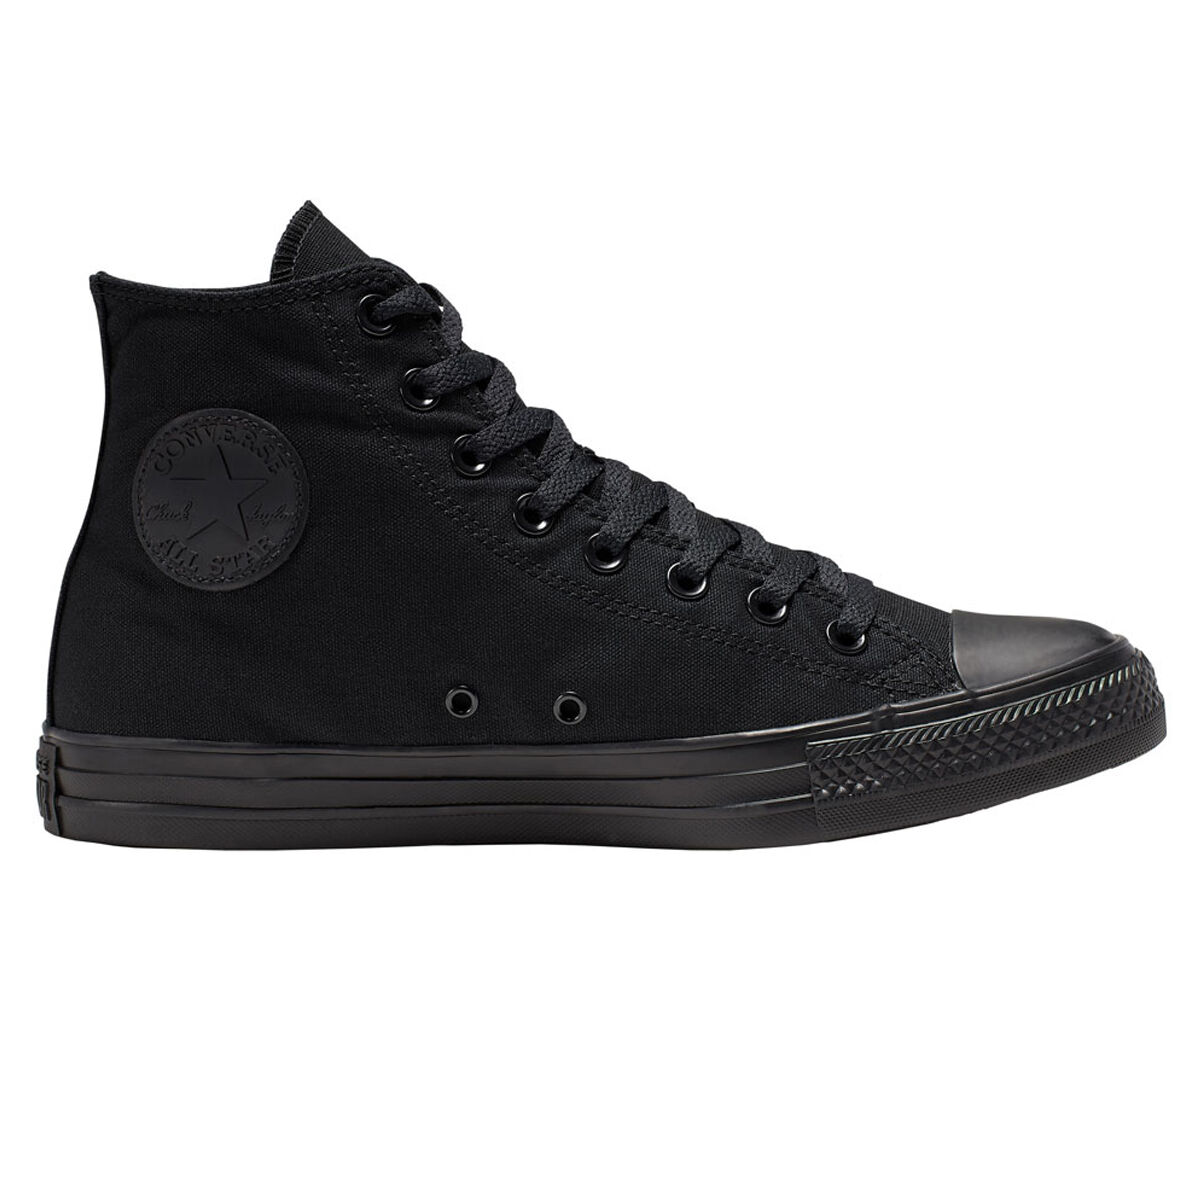 black converse shoes on sale